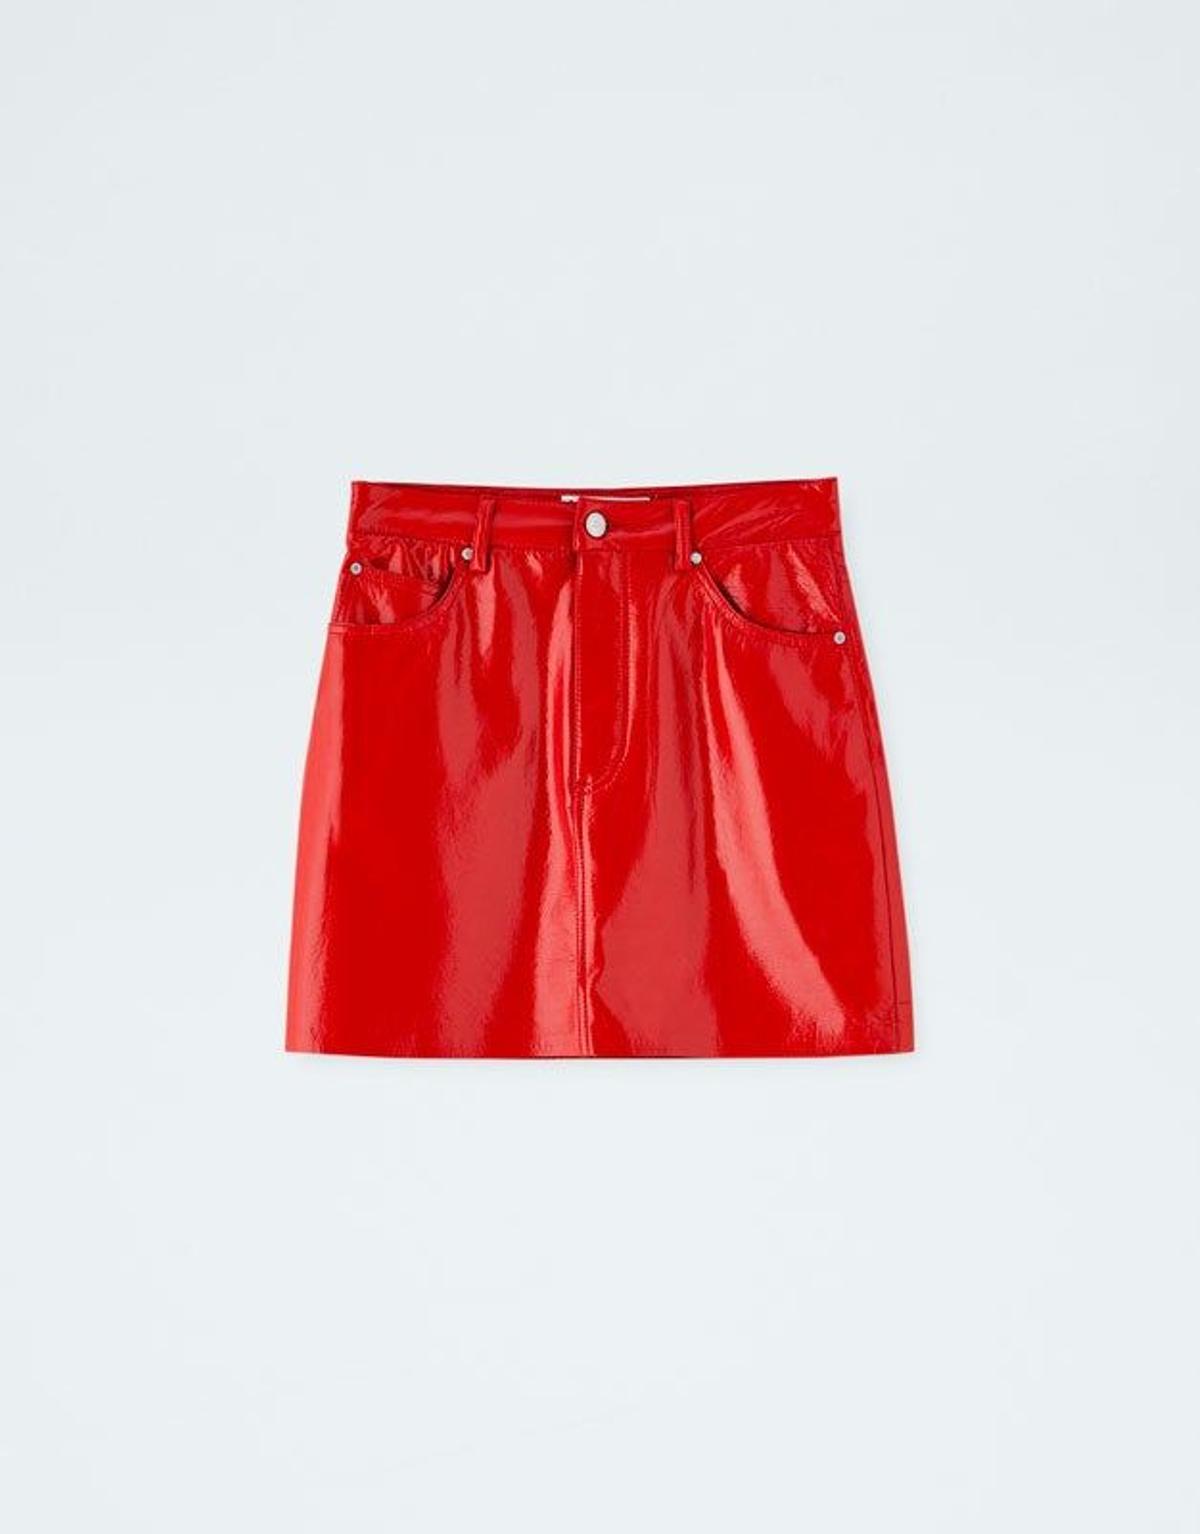 Minifalda de charol, de Pull and Bear (Precio: 19.99 euros)